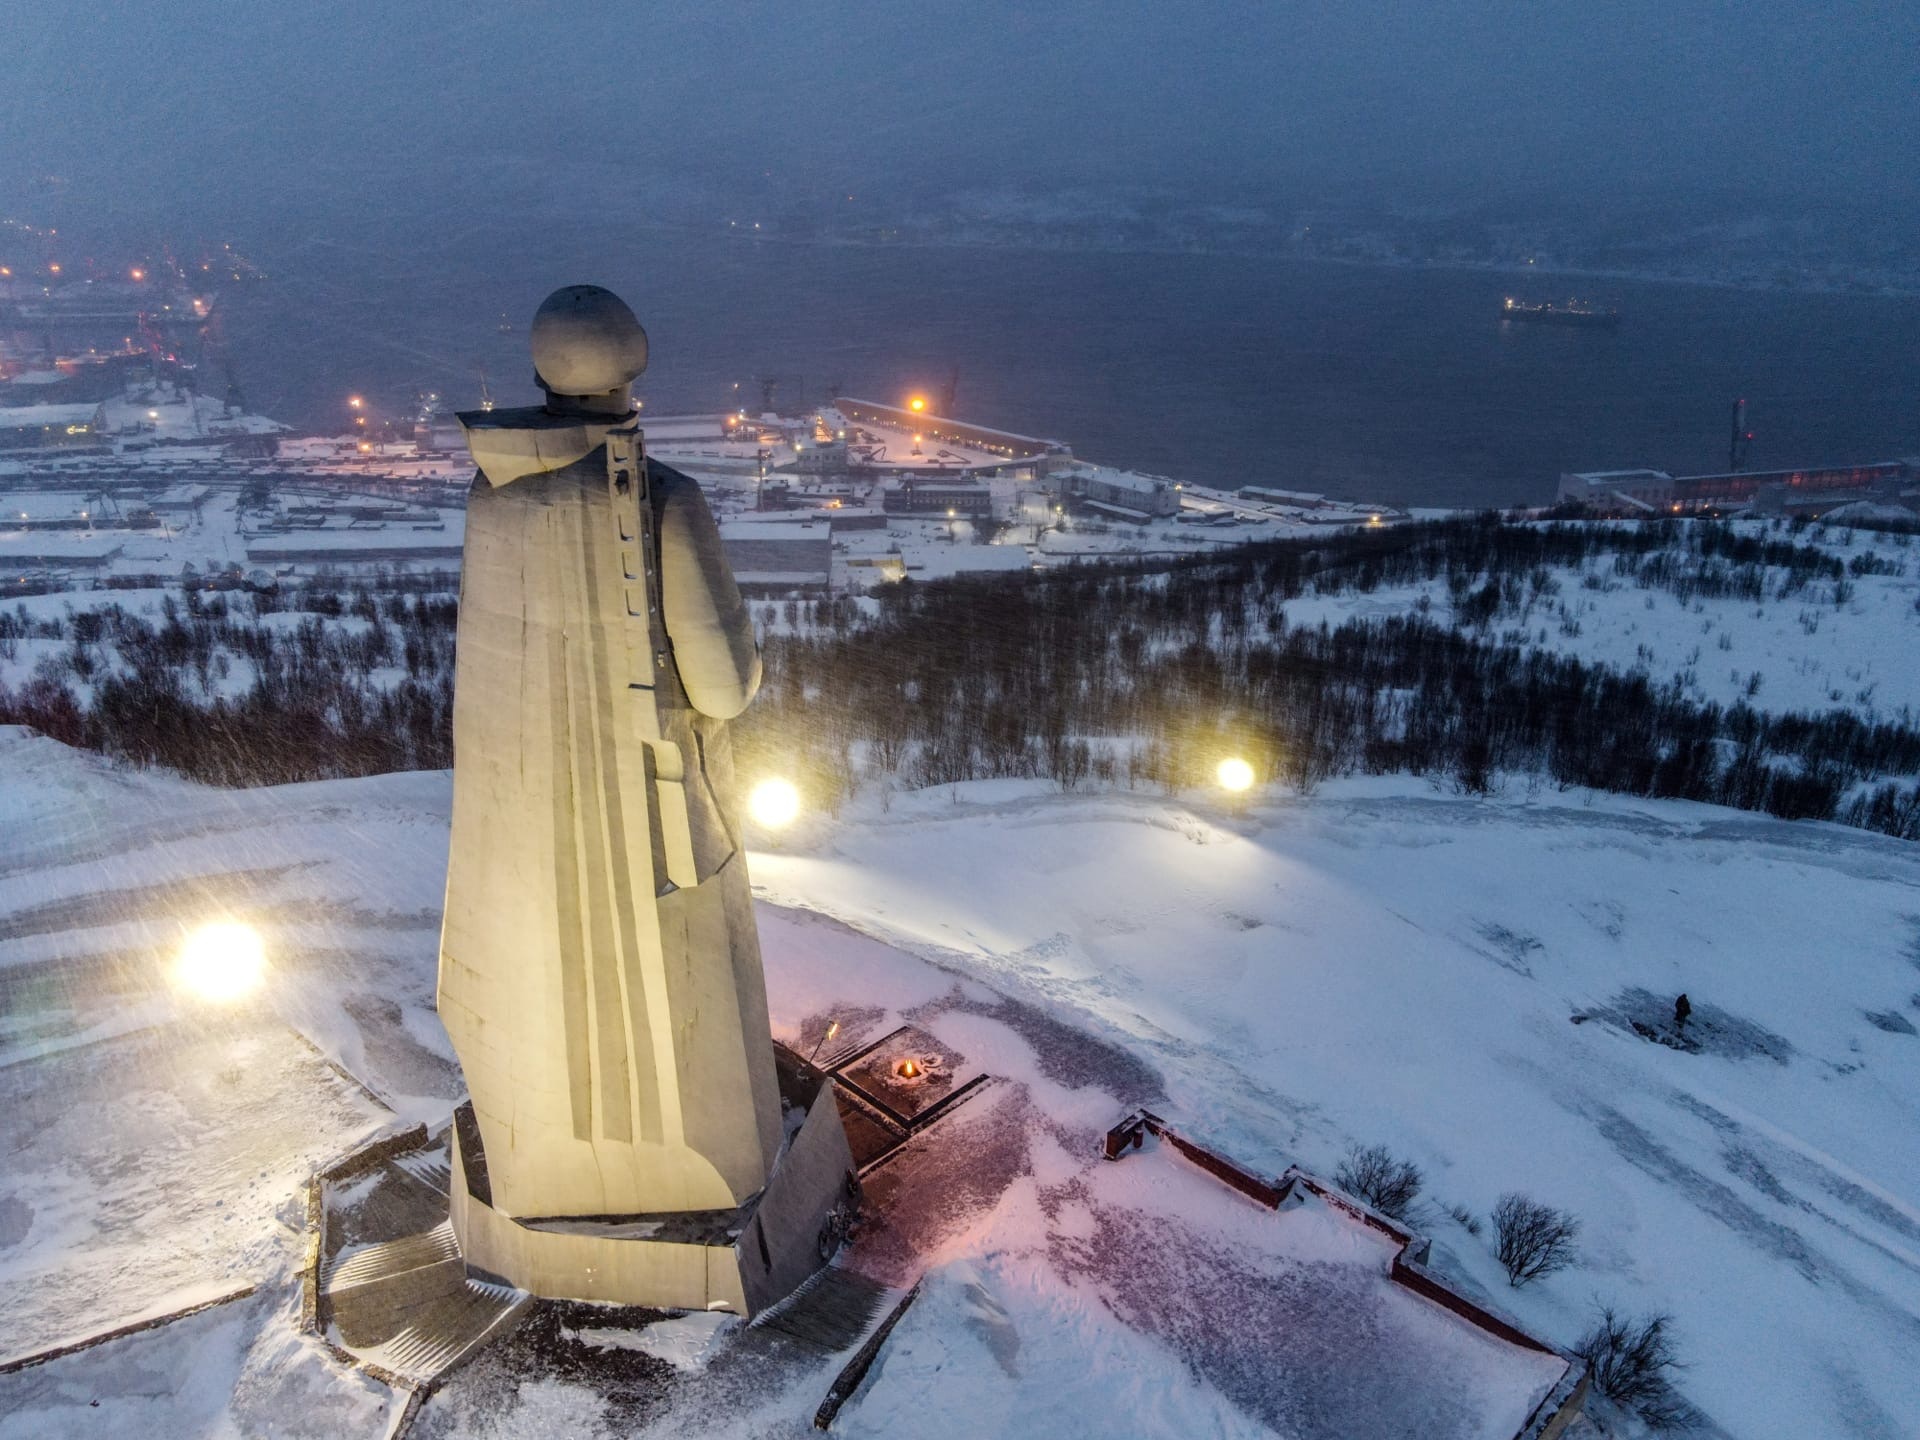 1920x1440, 636 Kb / Мурманск, памятник, солдат, монумент, снег, огни, вечный огонь, порт